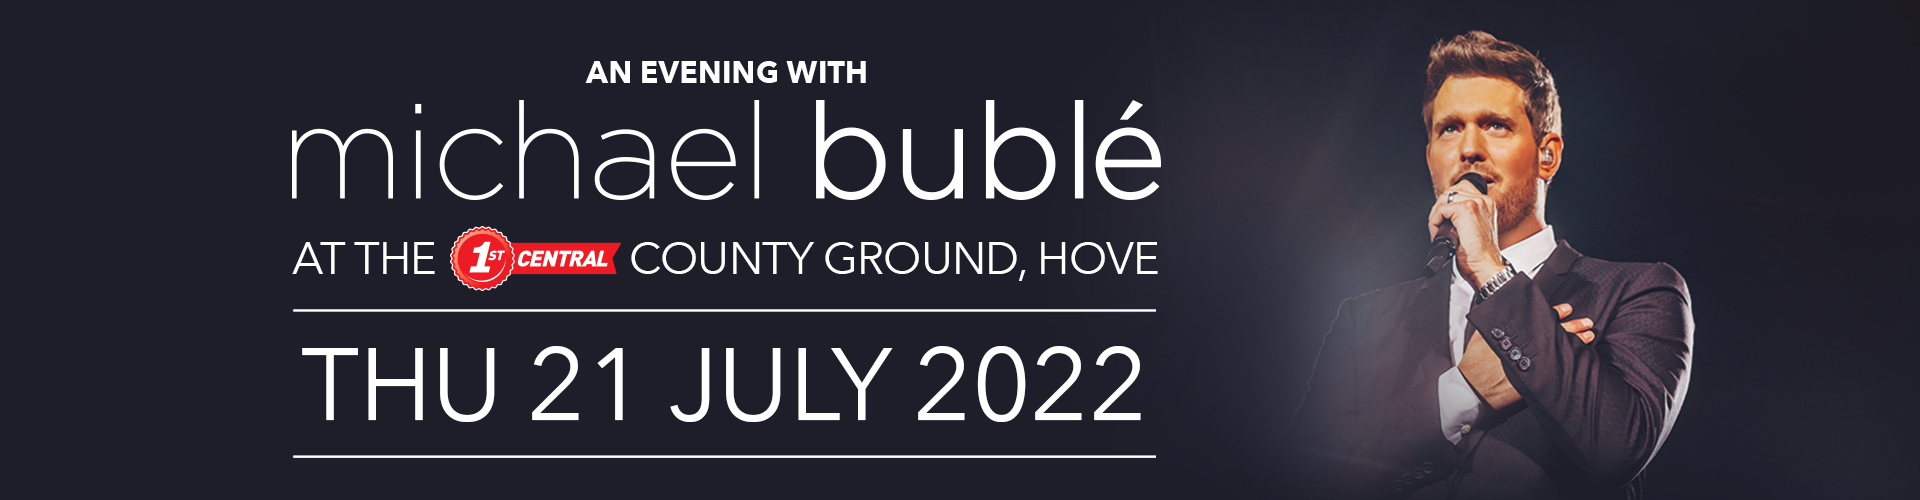 Michael Buble Tour Schedule 2022 Michael Bublé - General Page | Sussex Cricket